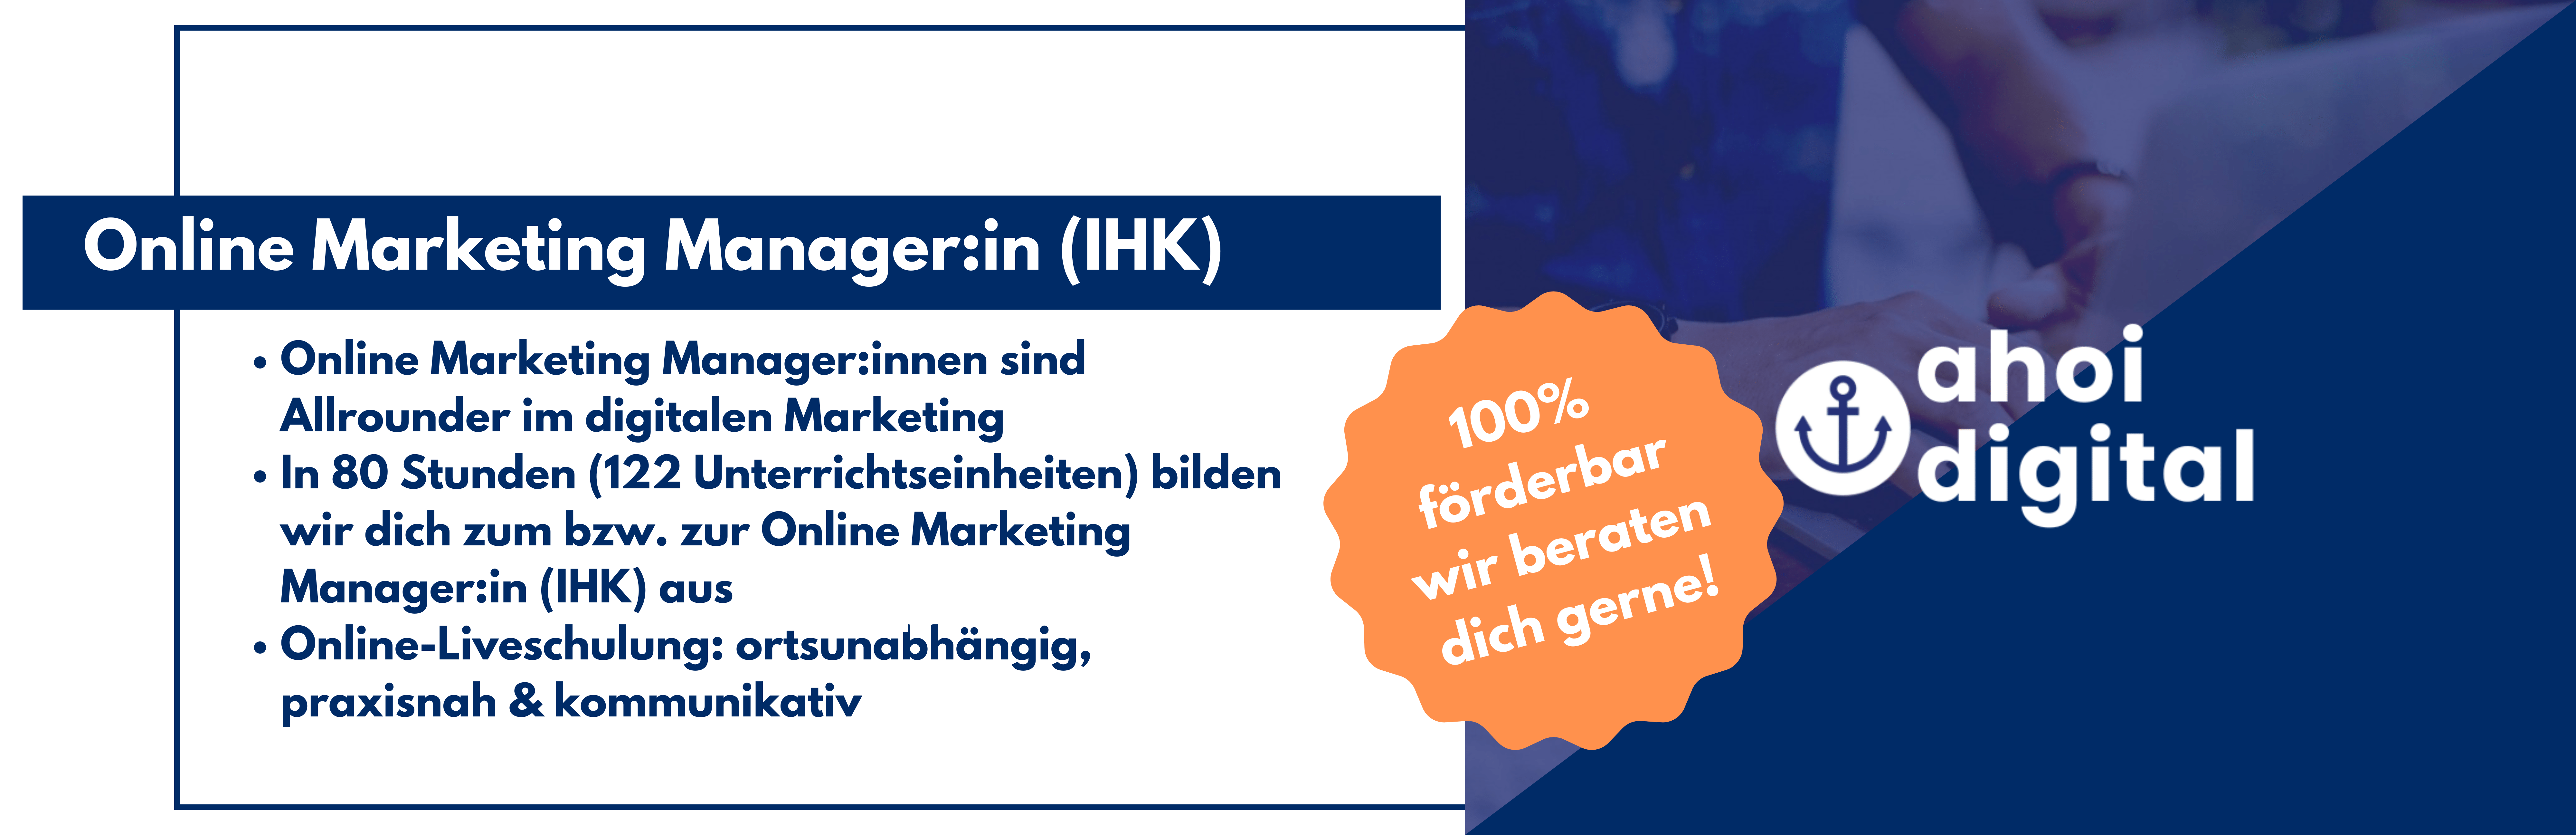 Werde Online Marketing Manager (IHK)! 1 - Weiterbildungsinstitut für digitales Marketing Weiterbildungsinstitut für digitales Marketing